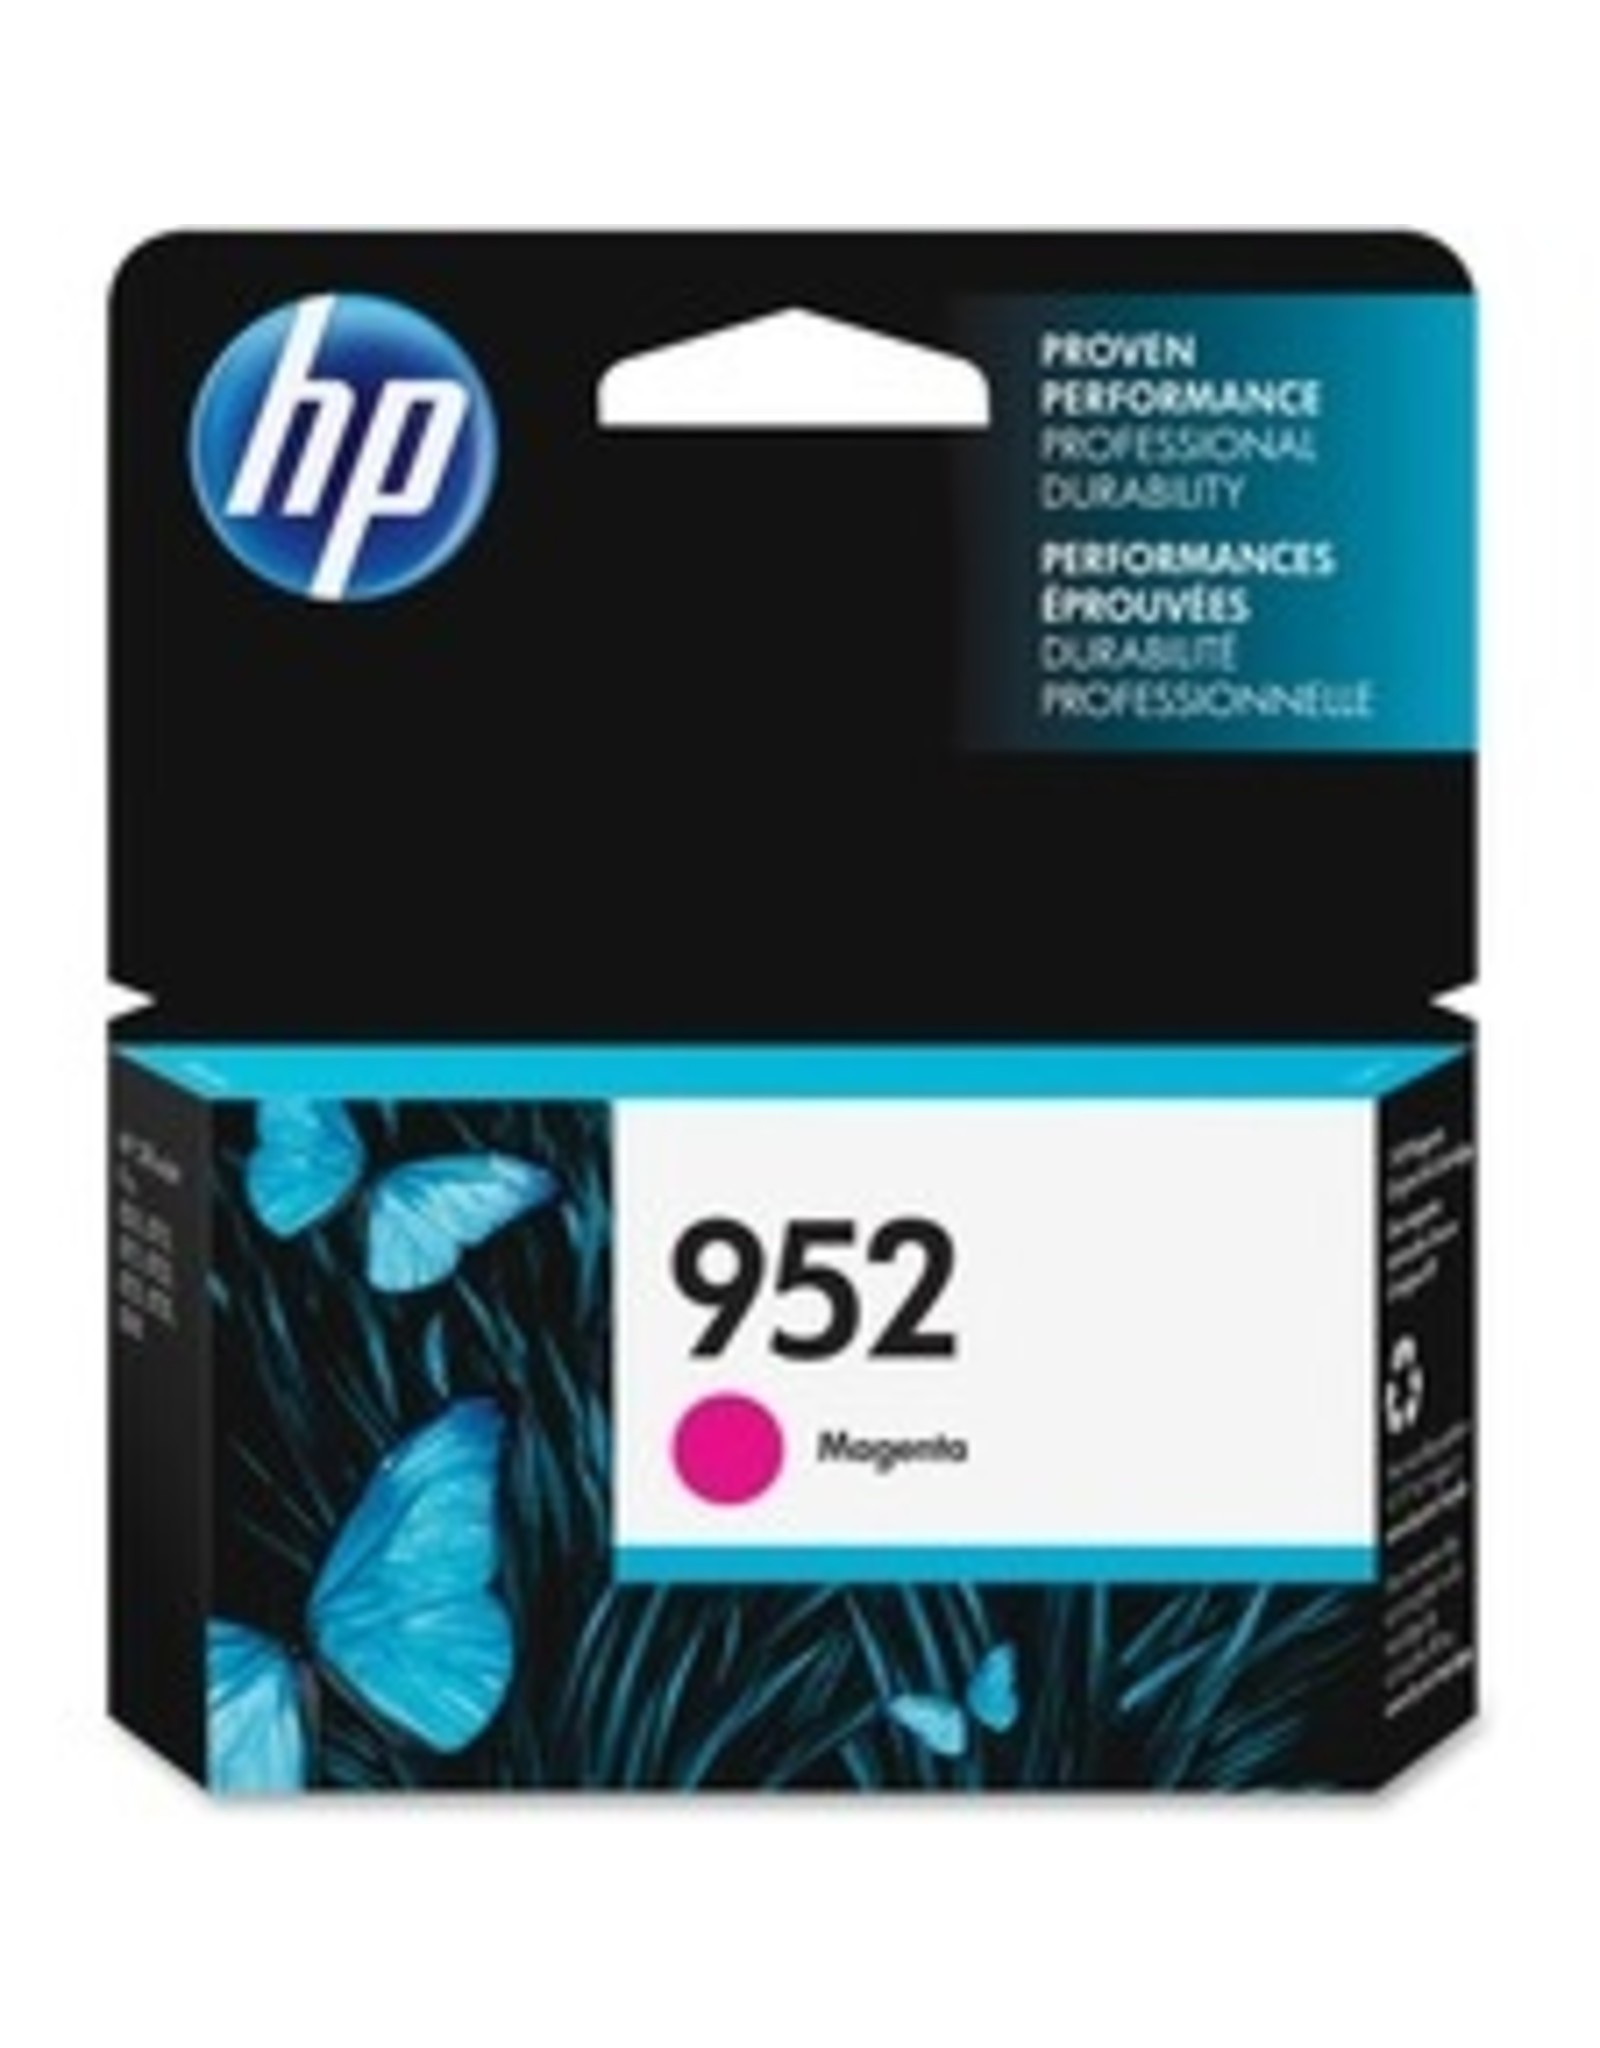 HP HP 952 Magenta Original Ink Cartridge - Single Pack